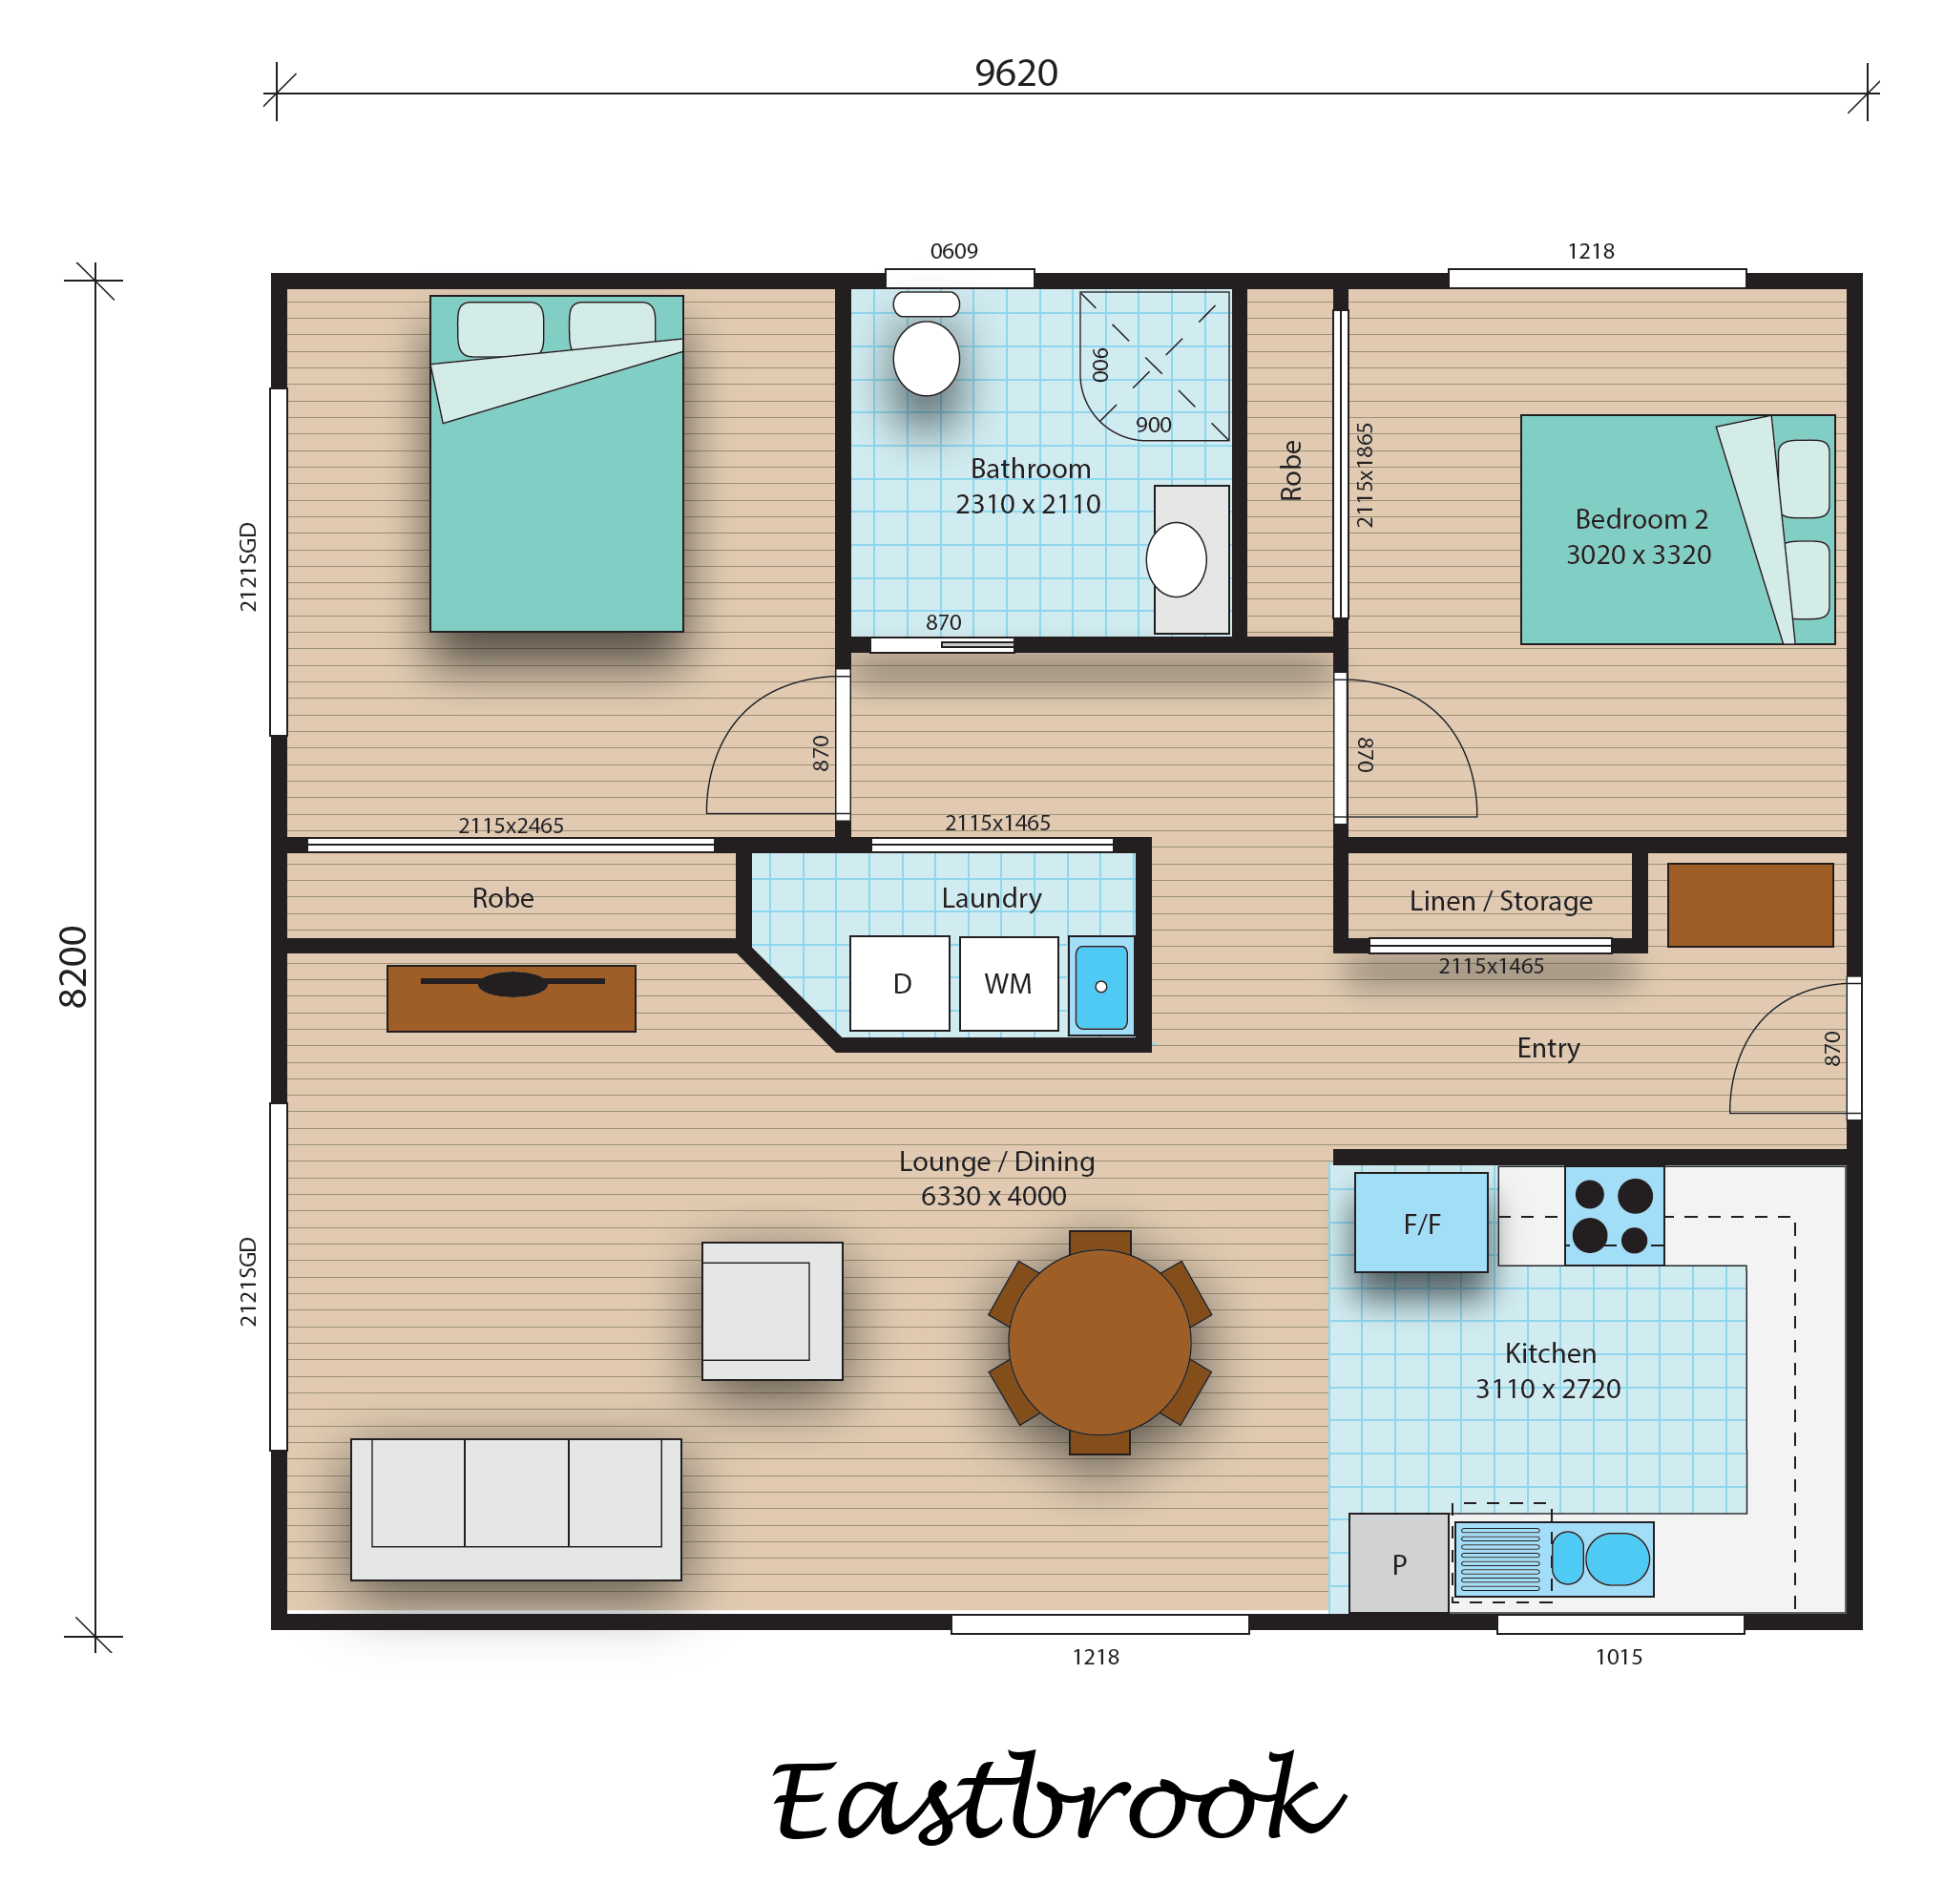 Eastbrook floorplan image